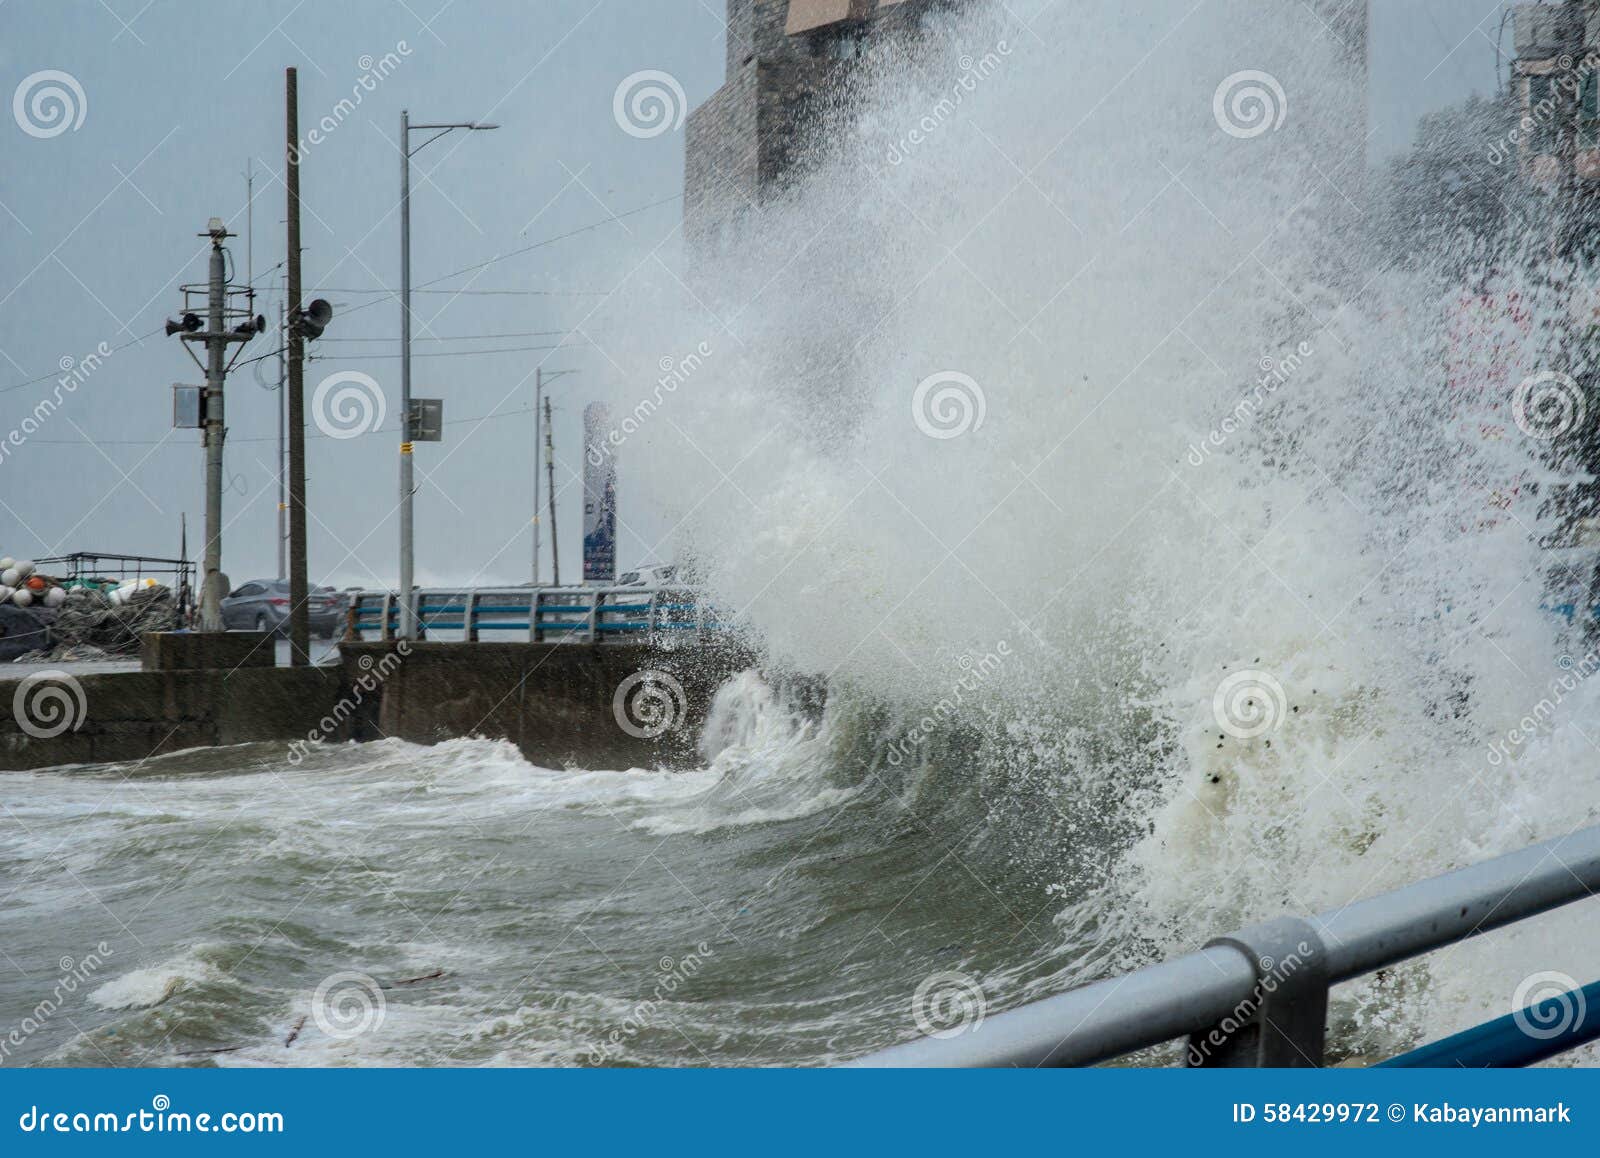 typhoon goni slams busan and south korea